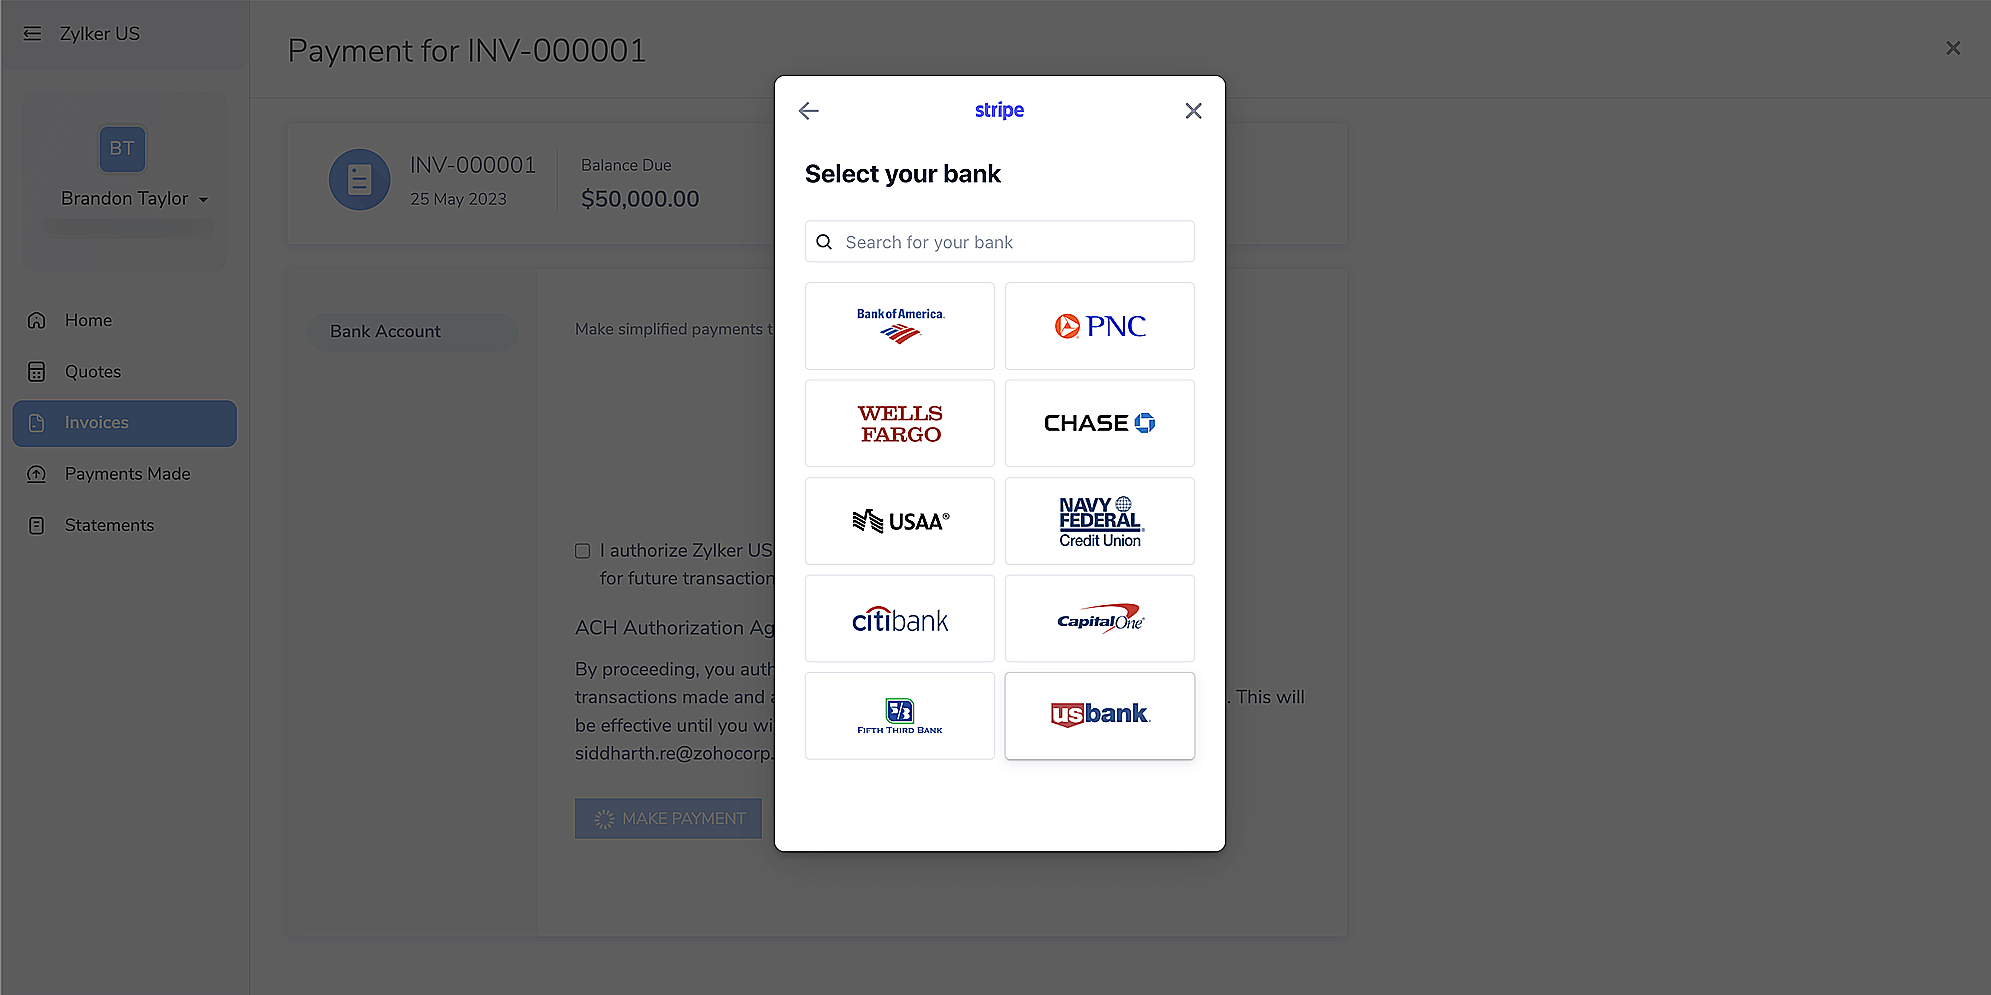 Select Bank